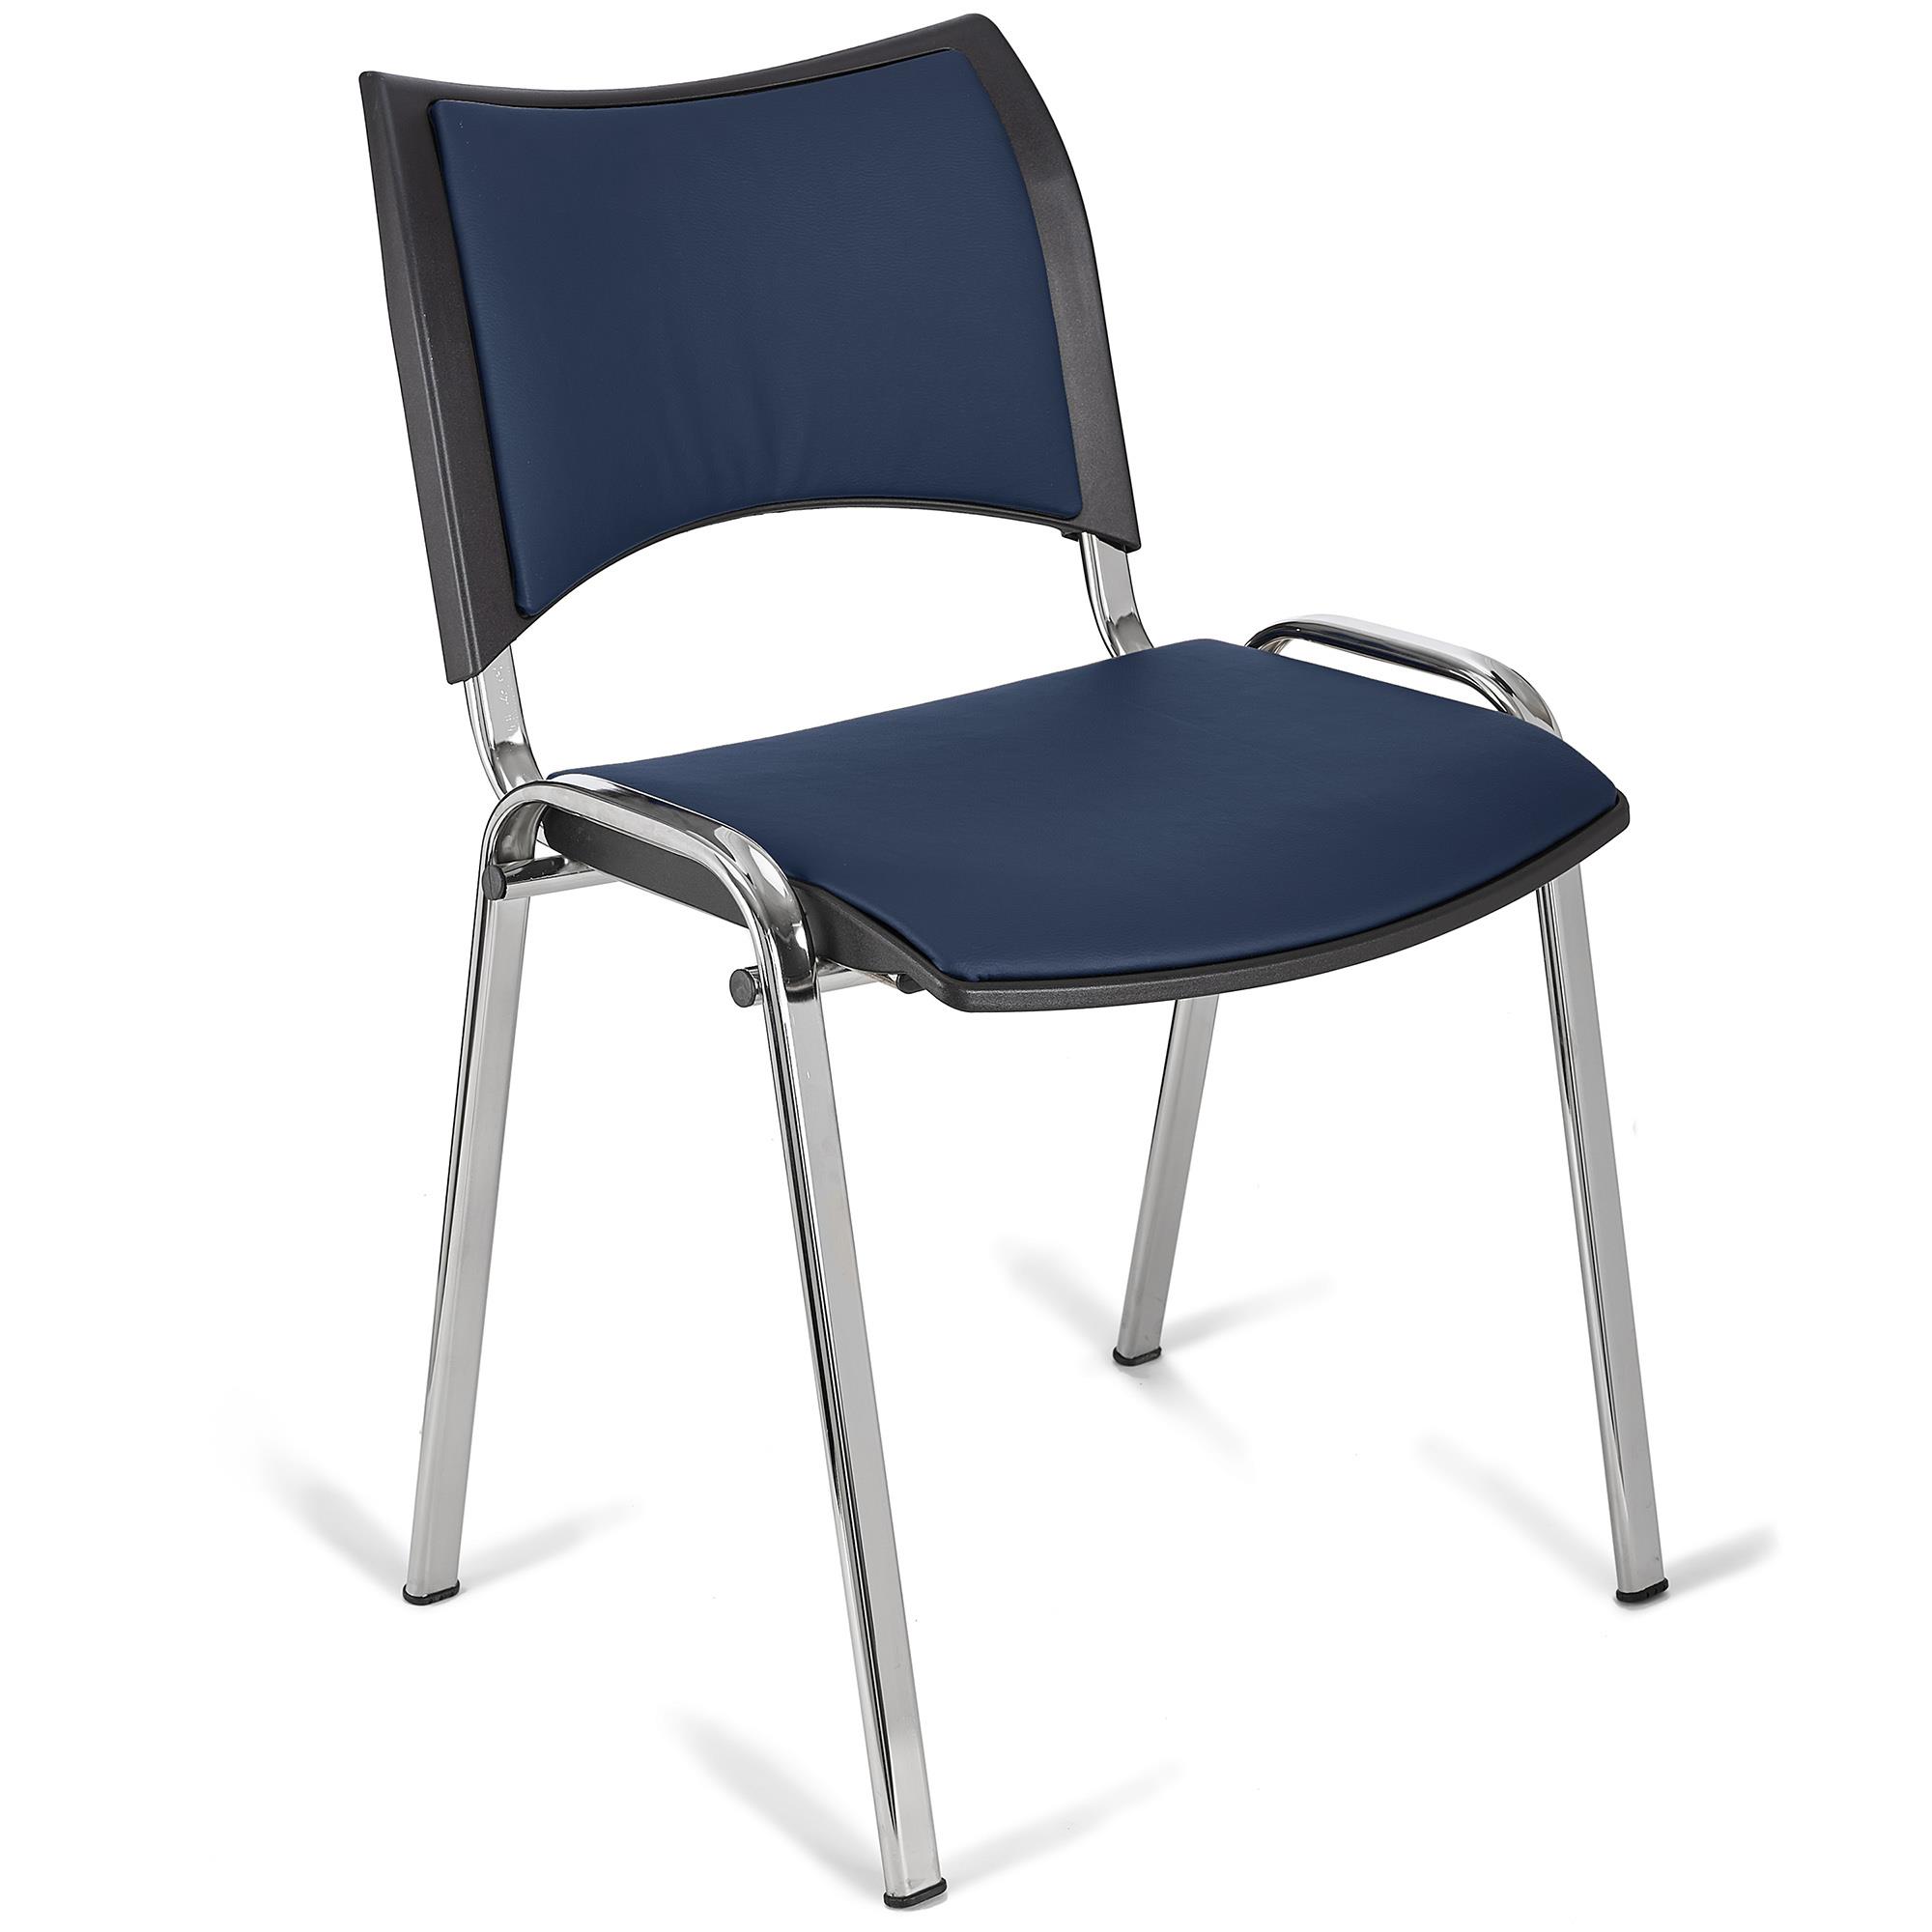 Cadeira de Visita ROMEL PELE, Prática e Empilhável, Pernas Cromadas, Azul